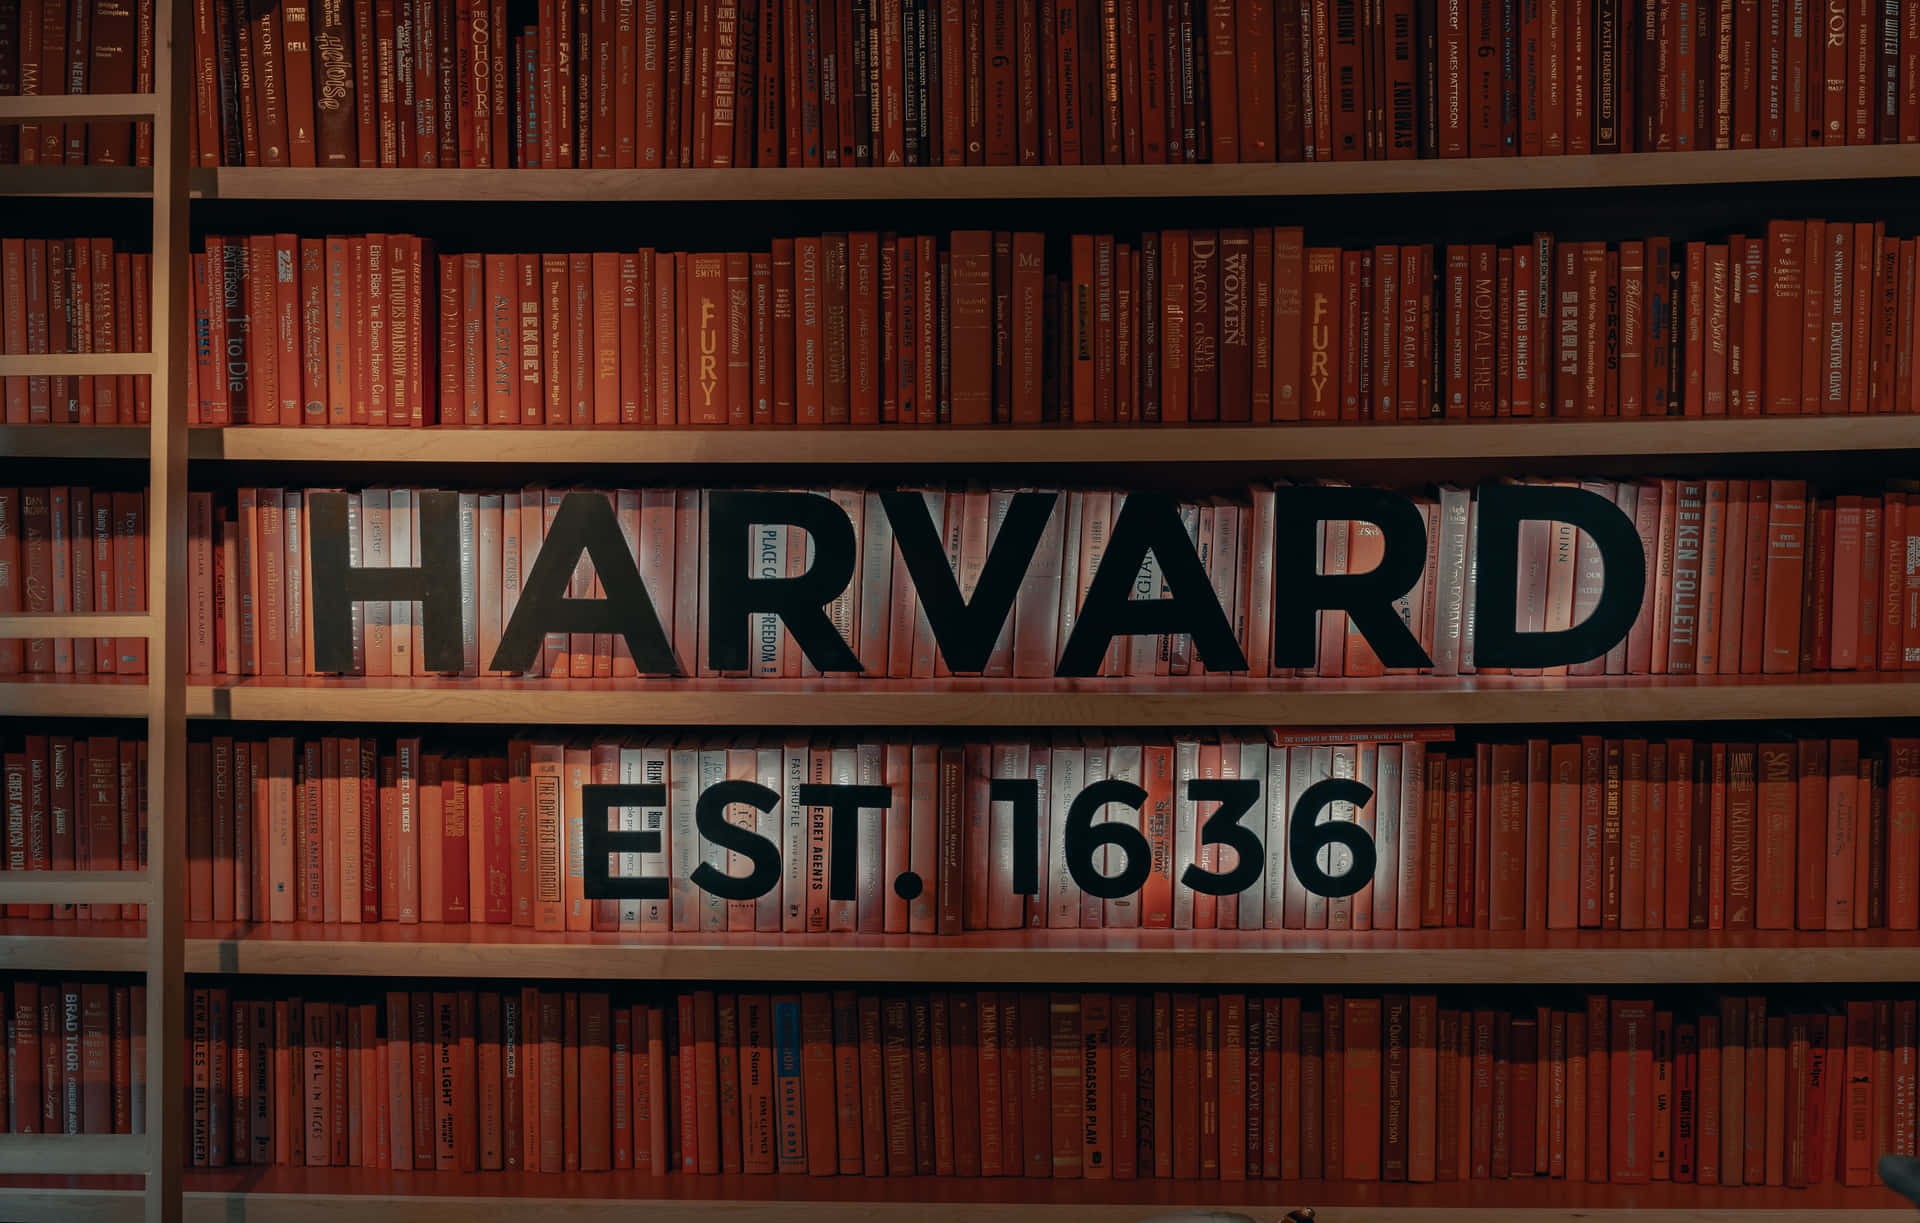 Harvardbiblioteket - Harvard Universitetet.